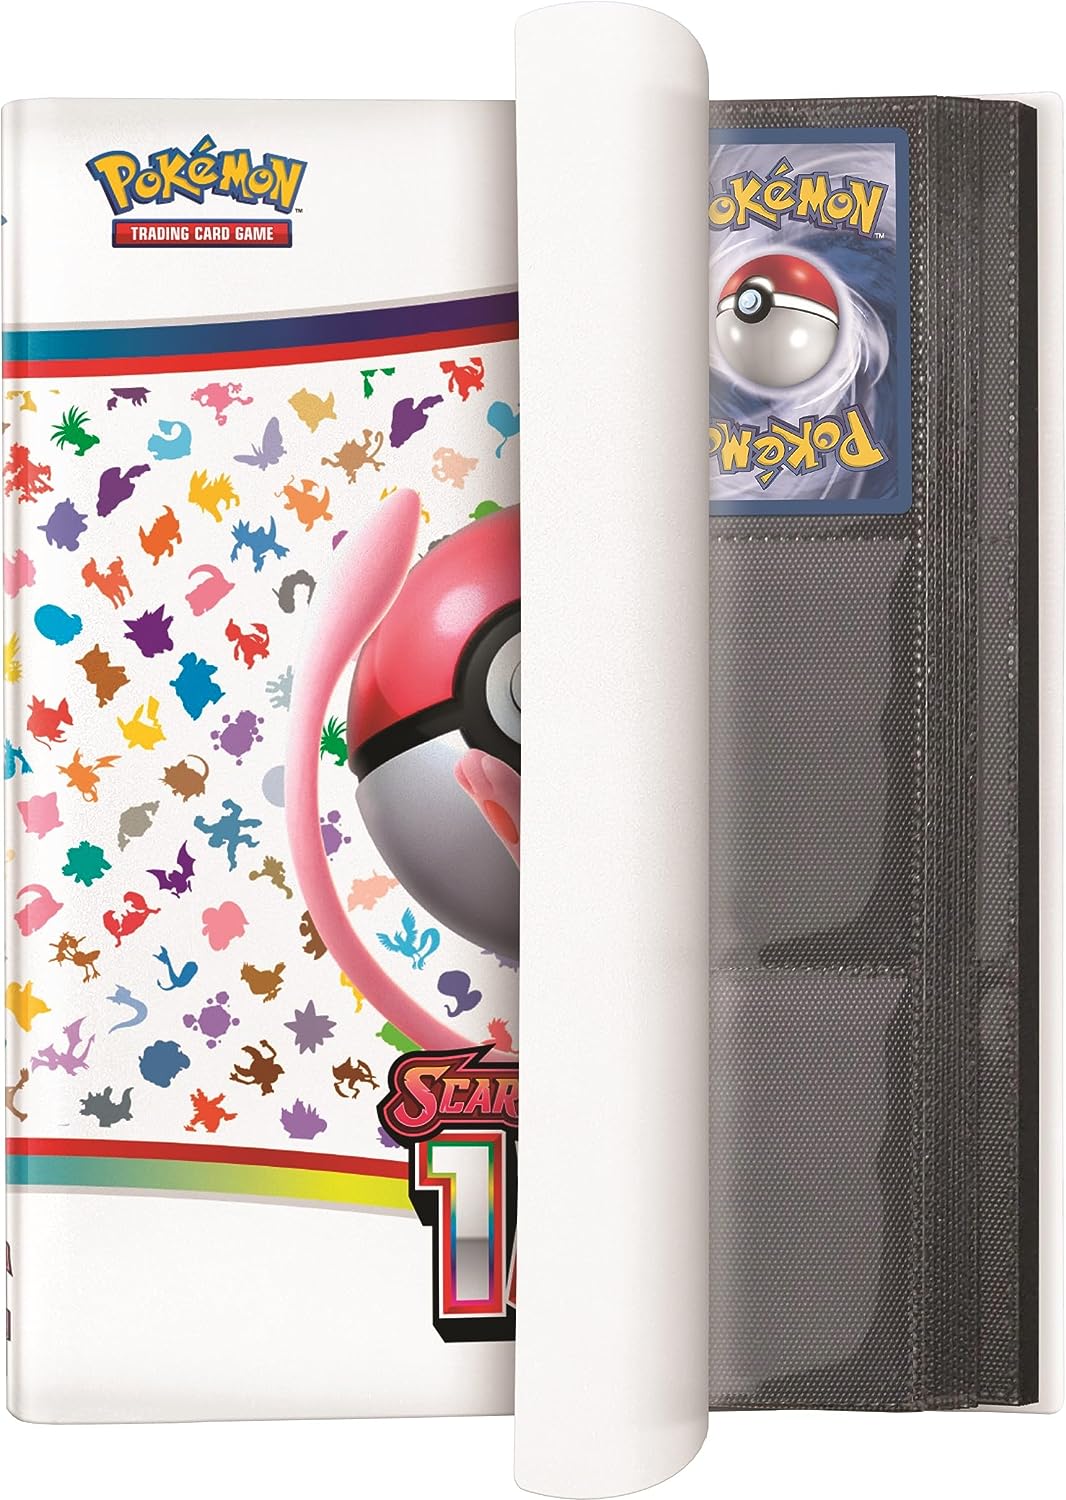 Pokémon TCG: Scarlet & Violet—151 Card Binder Collection 3142